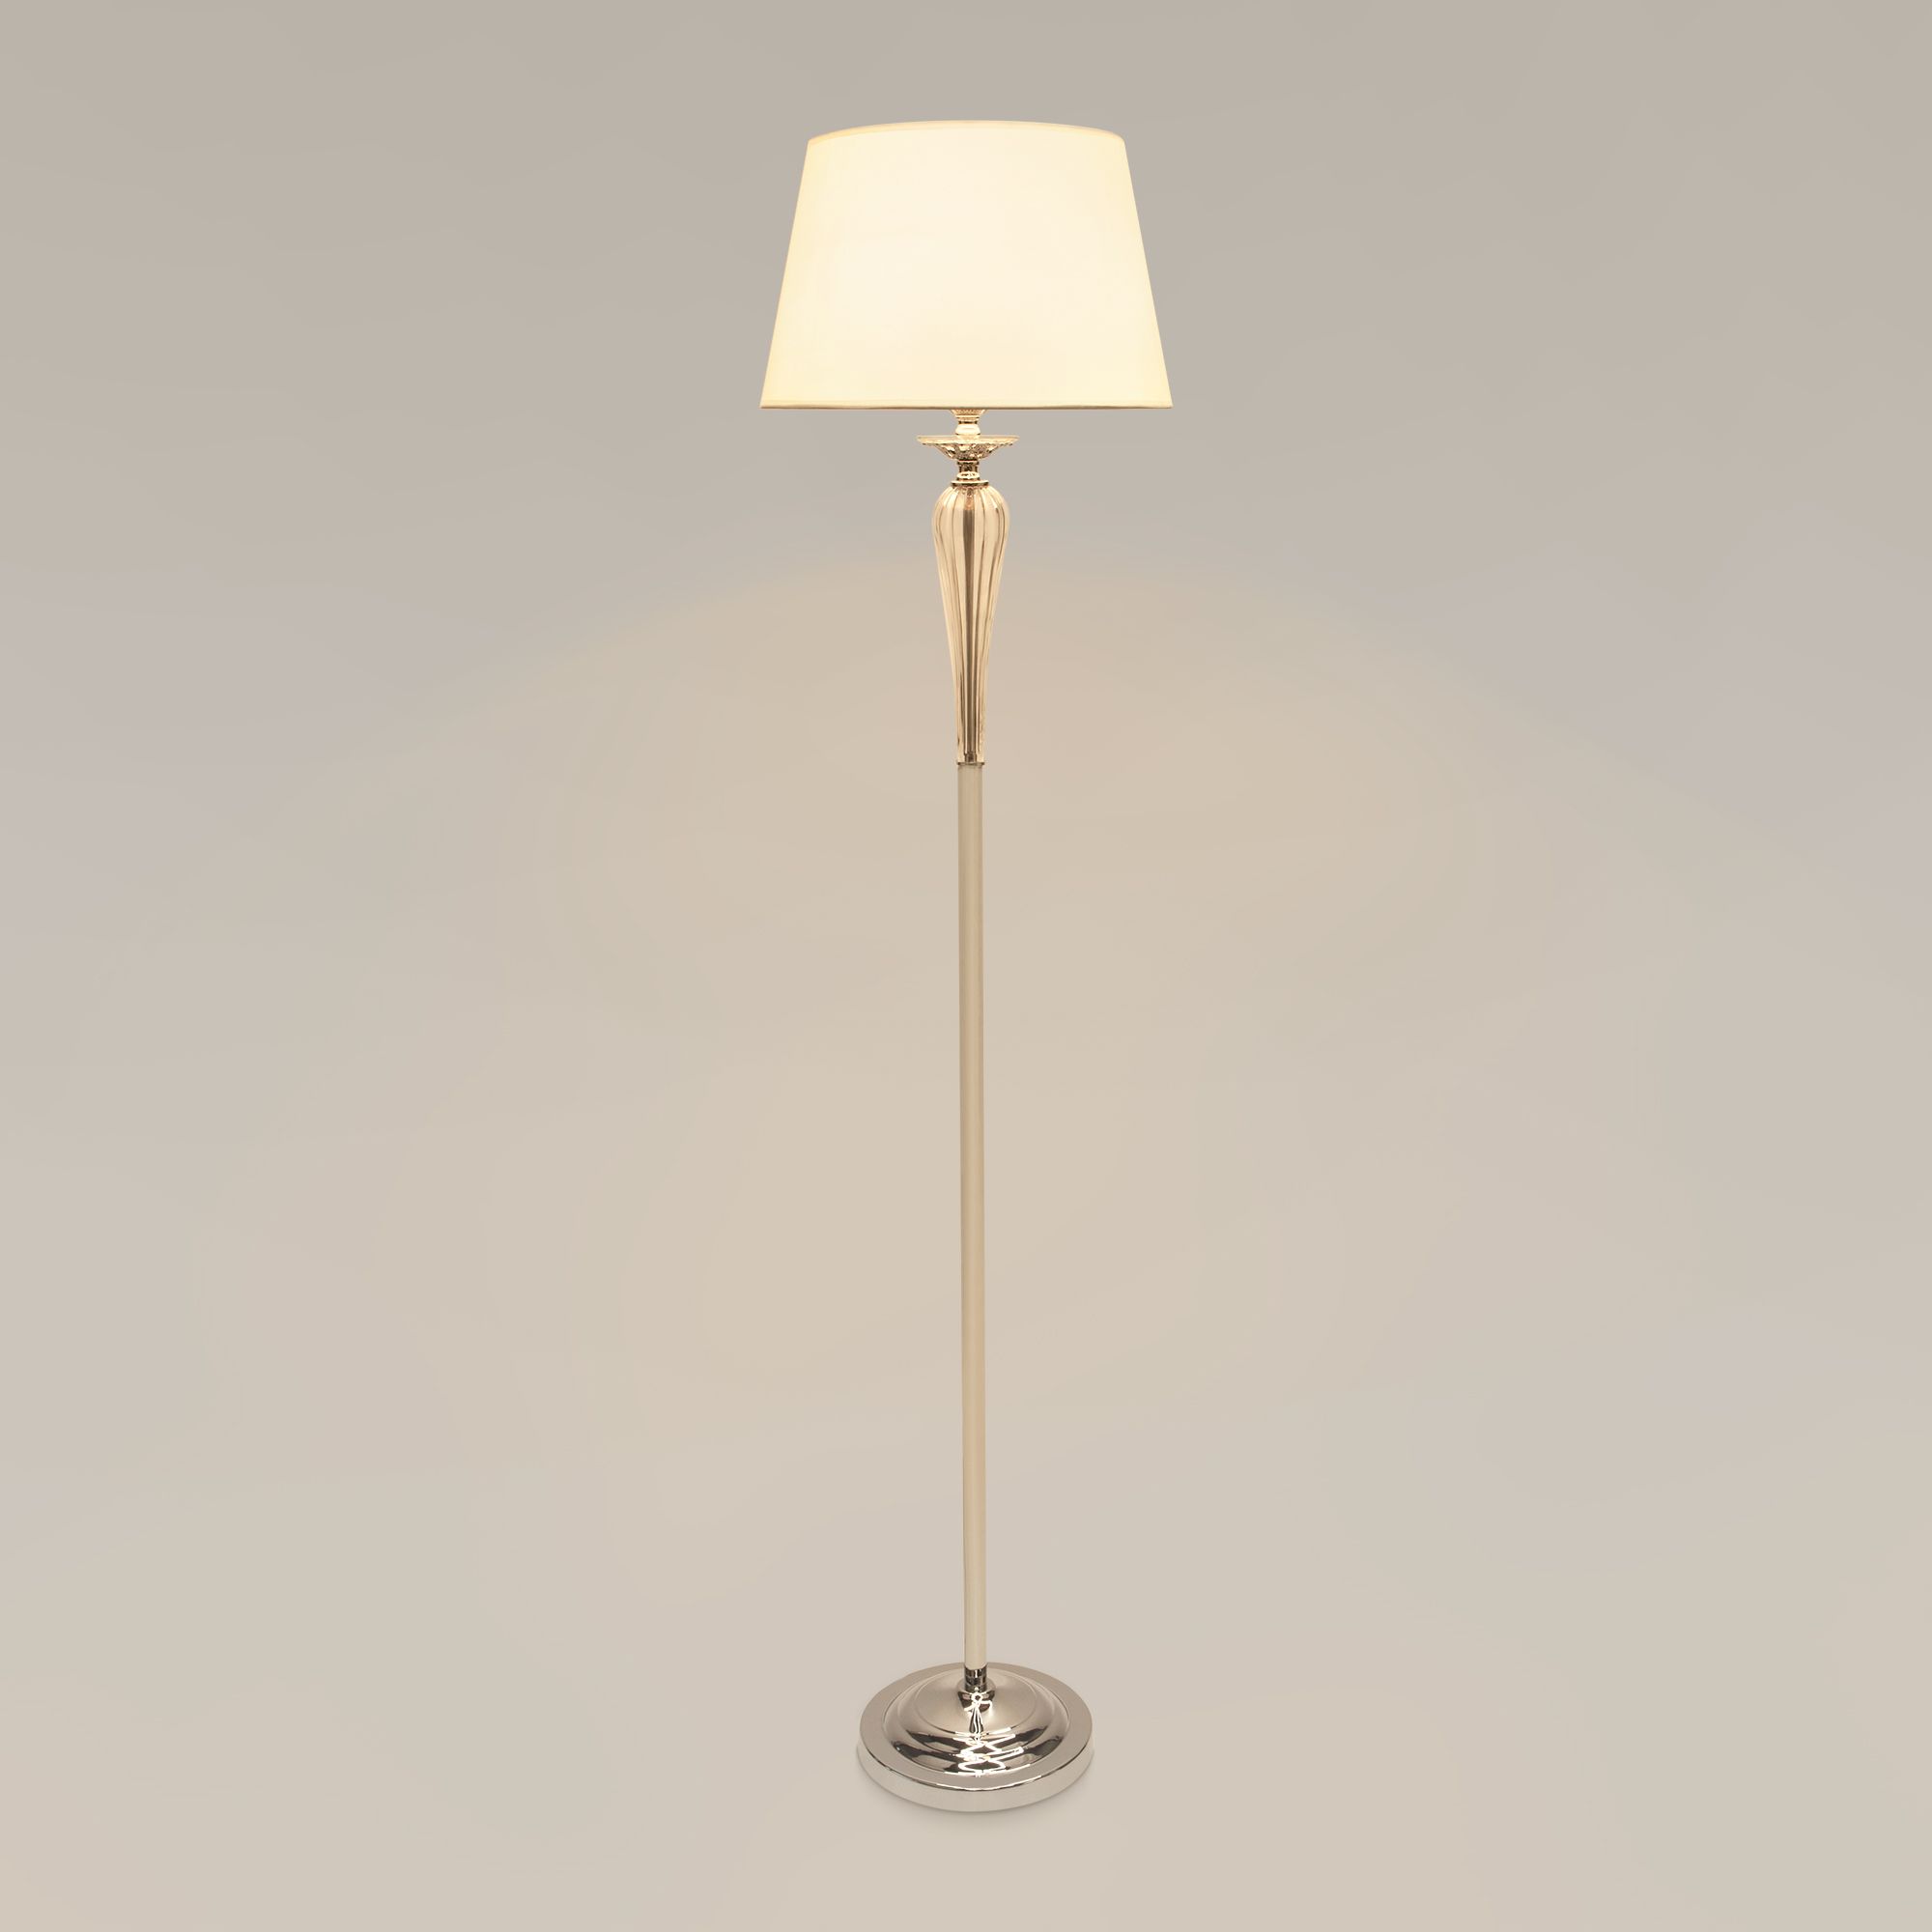 Настольный светильник с тканевым абажуром Bogate's Olenna 01105/1 белый. Фото 2